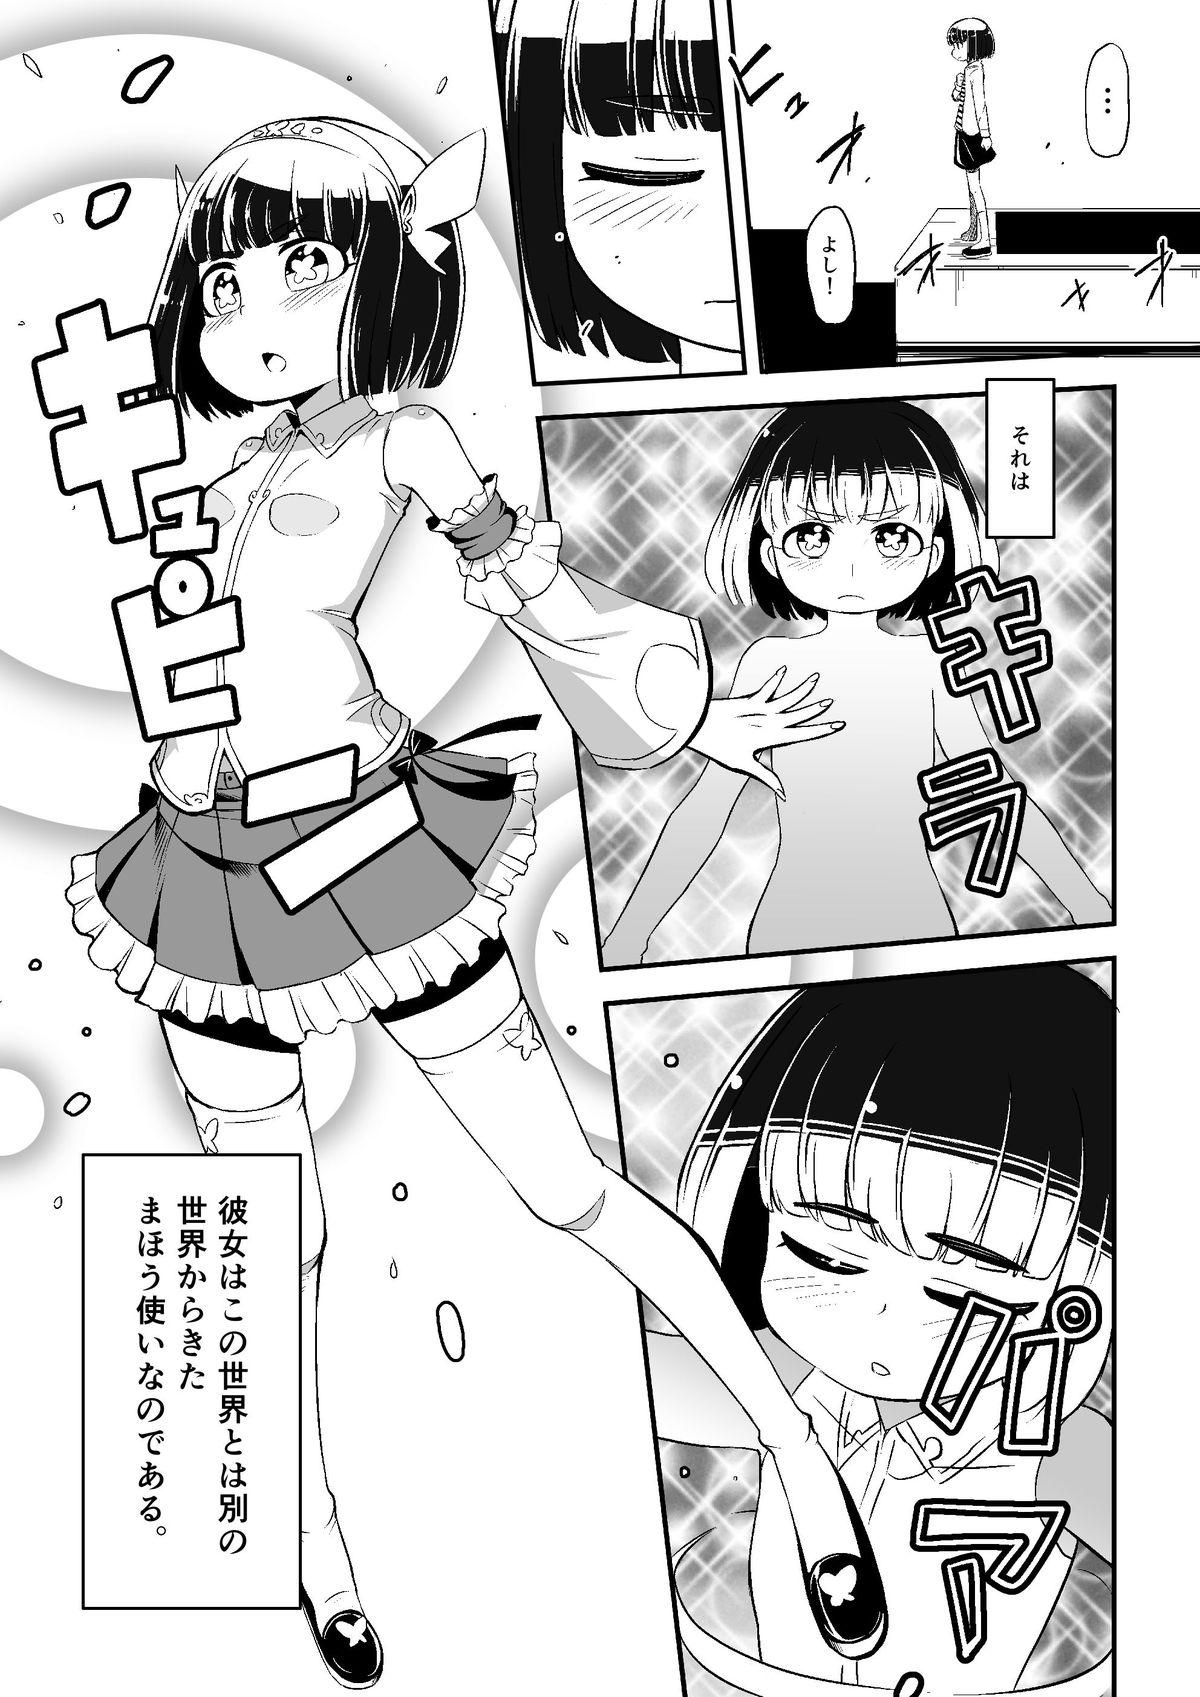 White Chick Mahoutsukai Ageha Watashi, Mahoutsukai ja Nakunacchatta... Barely 18 Porn - Page 5